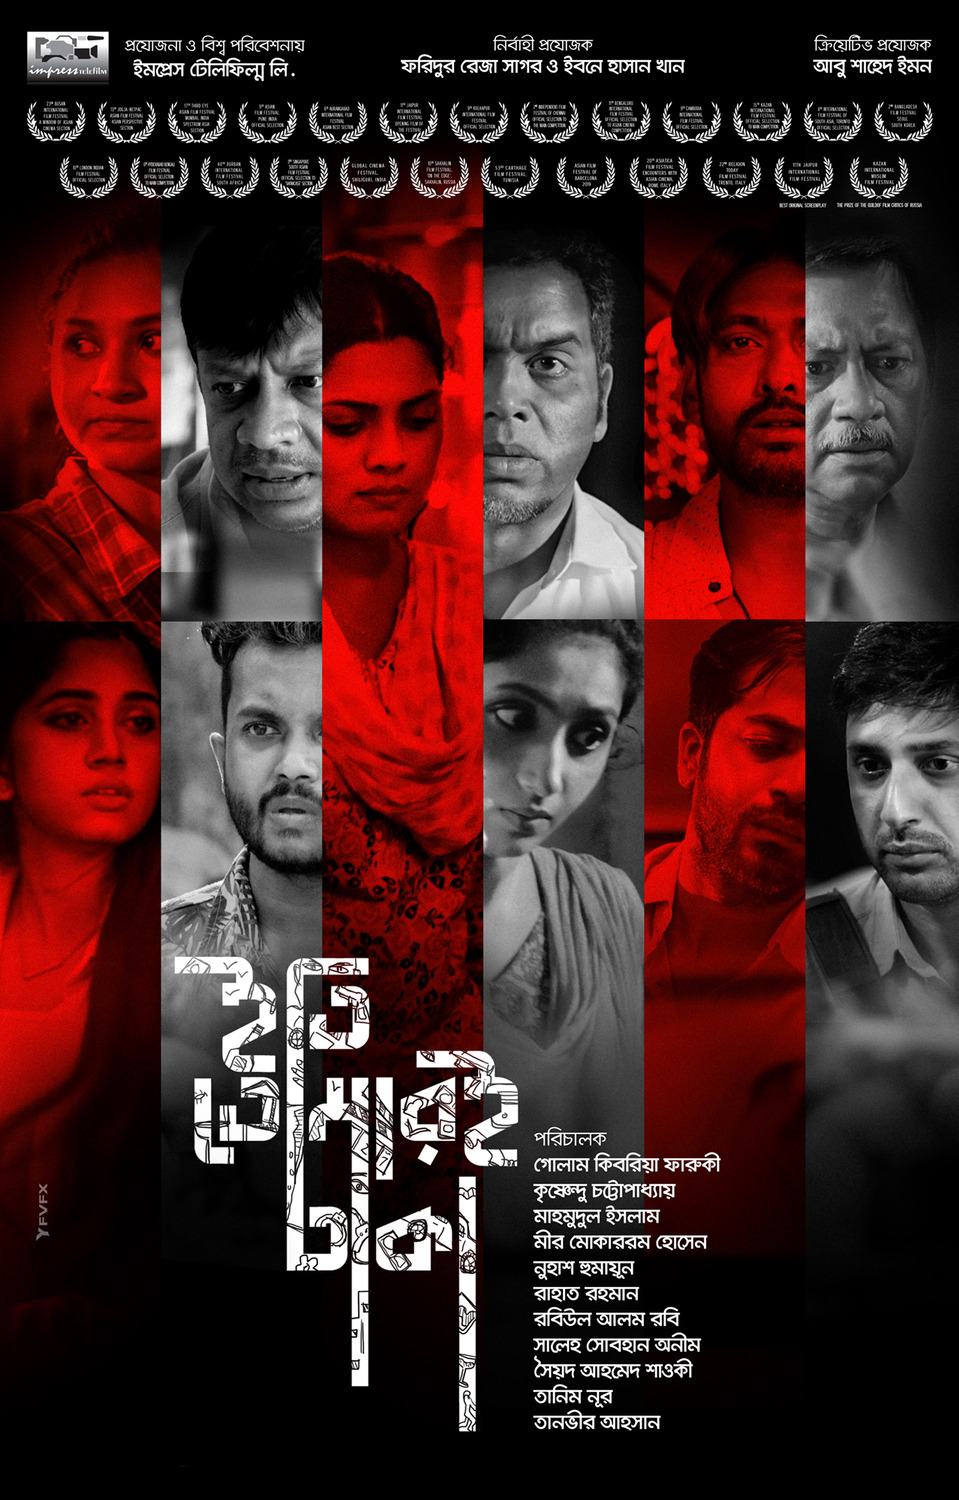 Extra Large Movie Poster Image for Iti, Tomari Dhaka (#8 of 8)